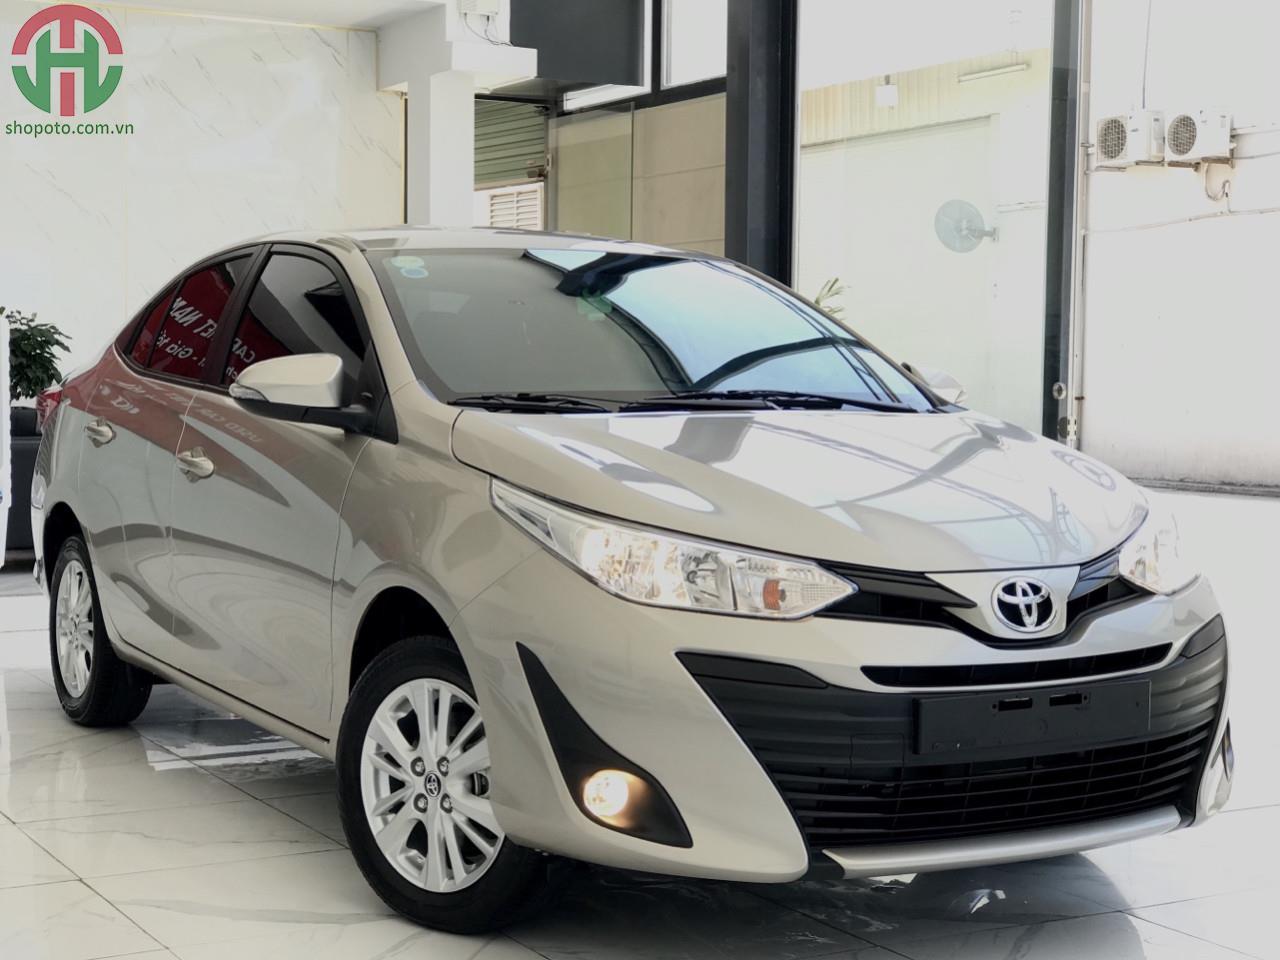 Toyota Vios 2017 MT Vàng Cát Tại Phường Dĩ An Thị xã Dĩ An Bình Dương   RaoXYZ